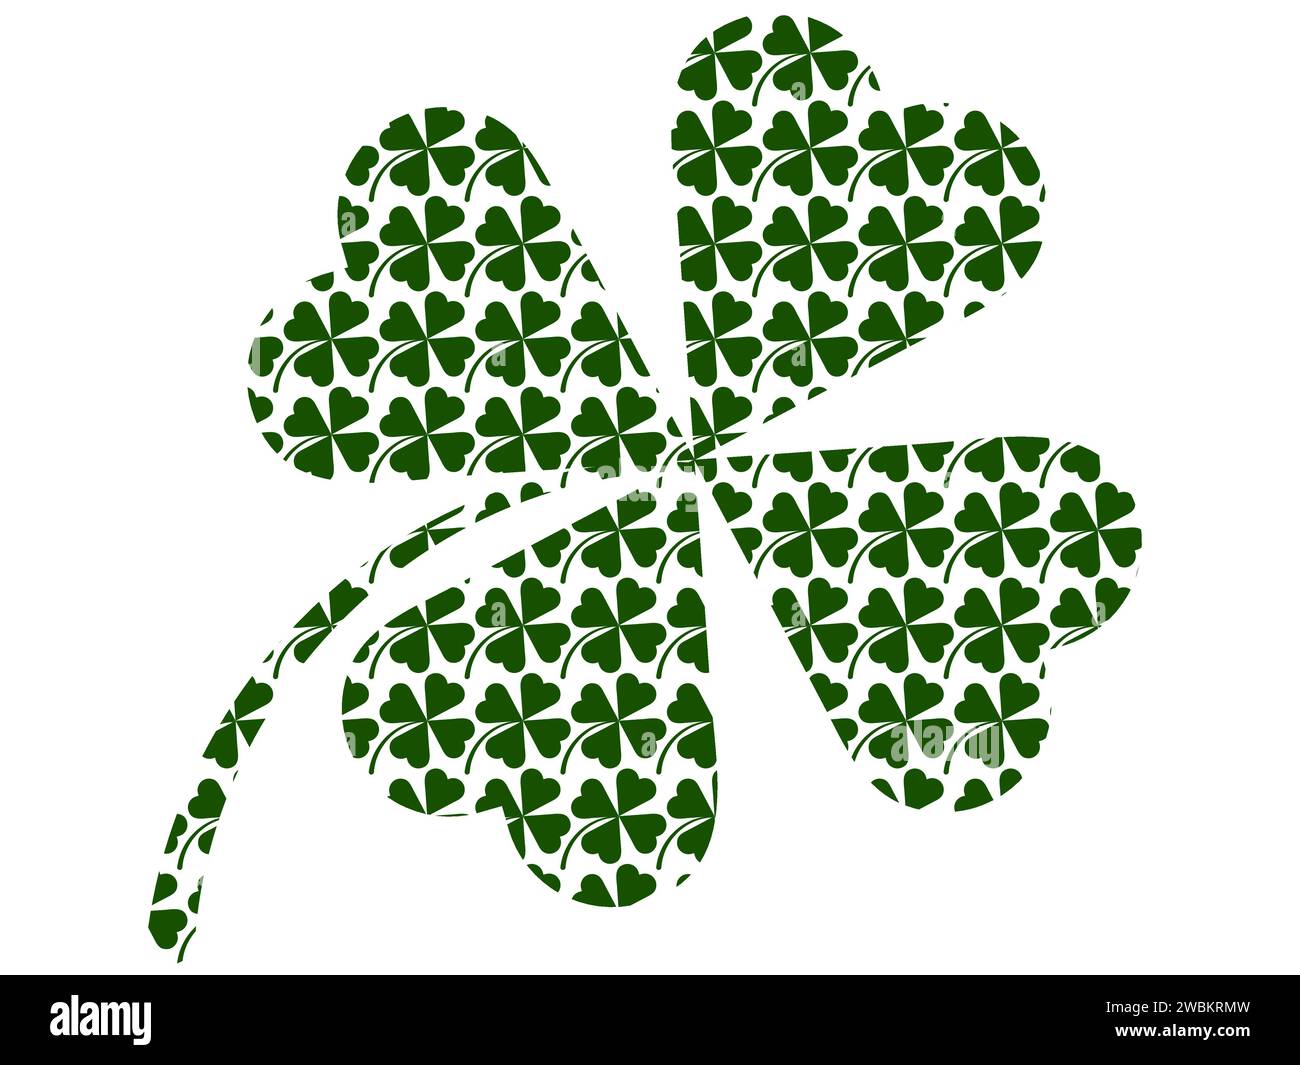 Shamrock-Umriss mit einem Shamrock-Muster innen isoliert auf weißem Hintergrund. St. Patrick's Day oder Irland Symbol. Flaches Logo Stock Vektor